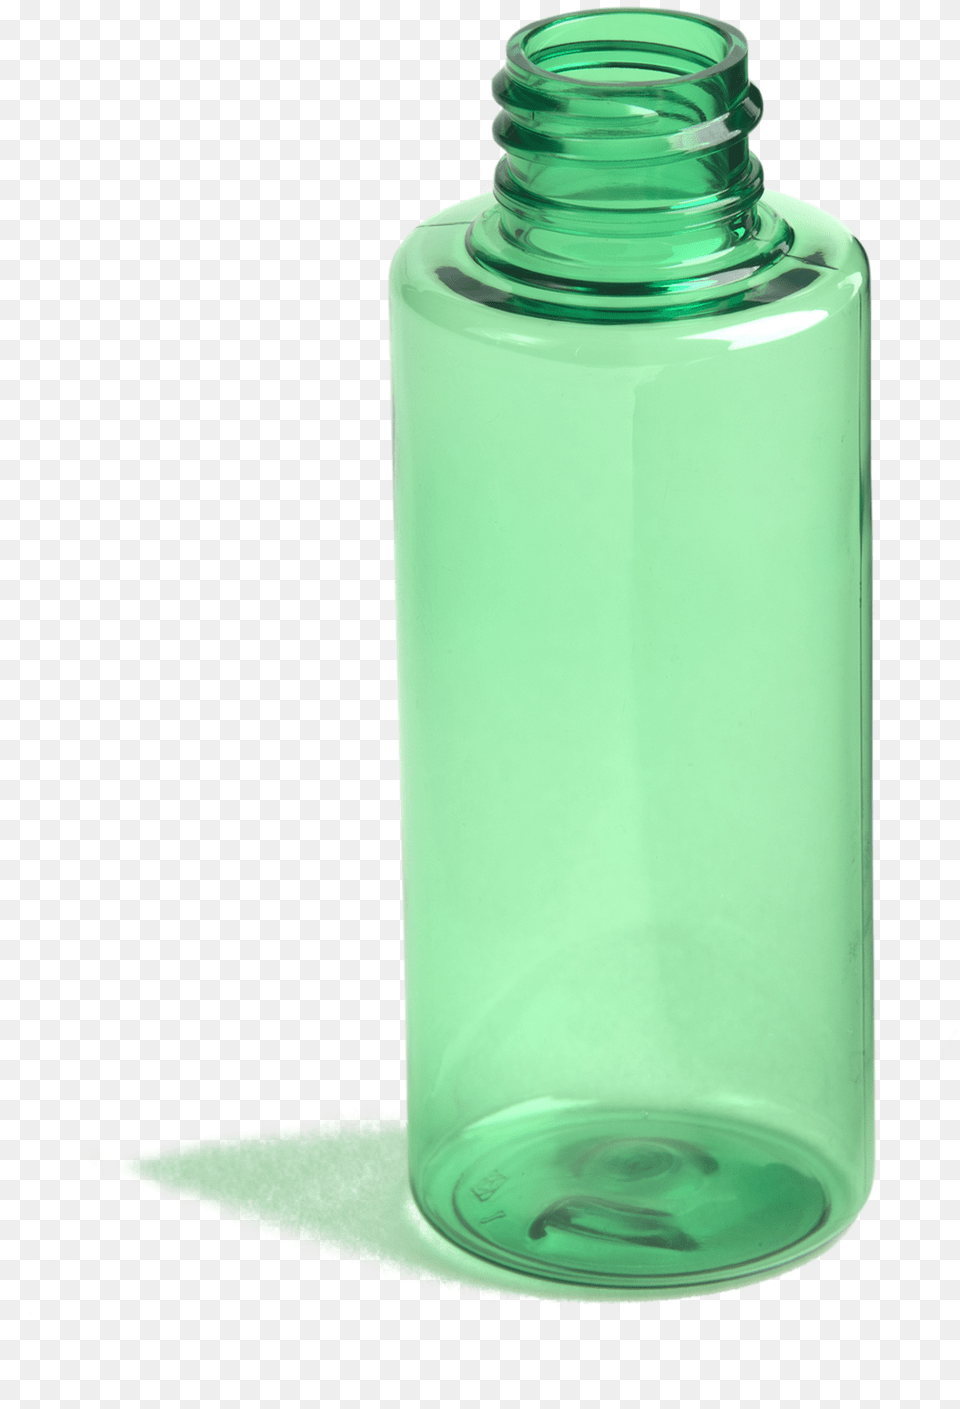 Glass Bottle Cylinder, Jar, Shaker, Water Bottle Free Transparent Png